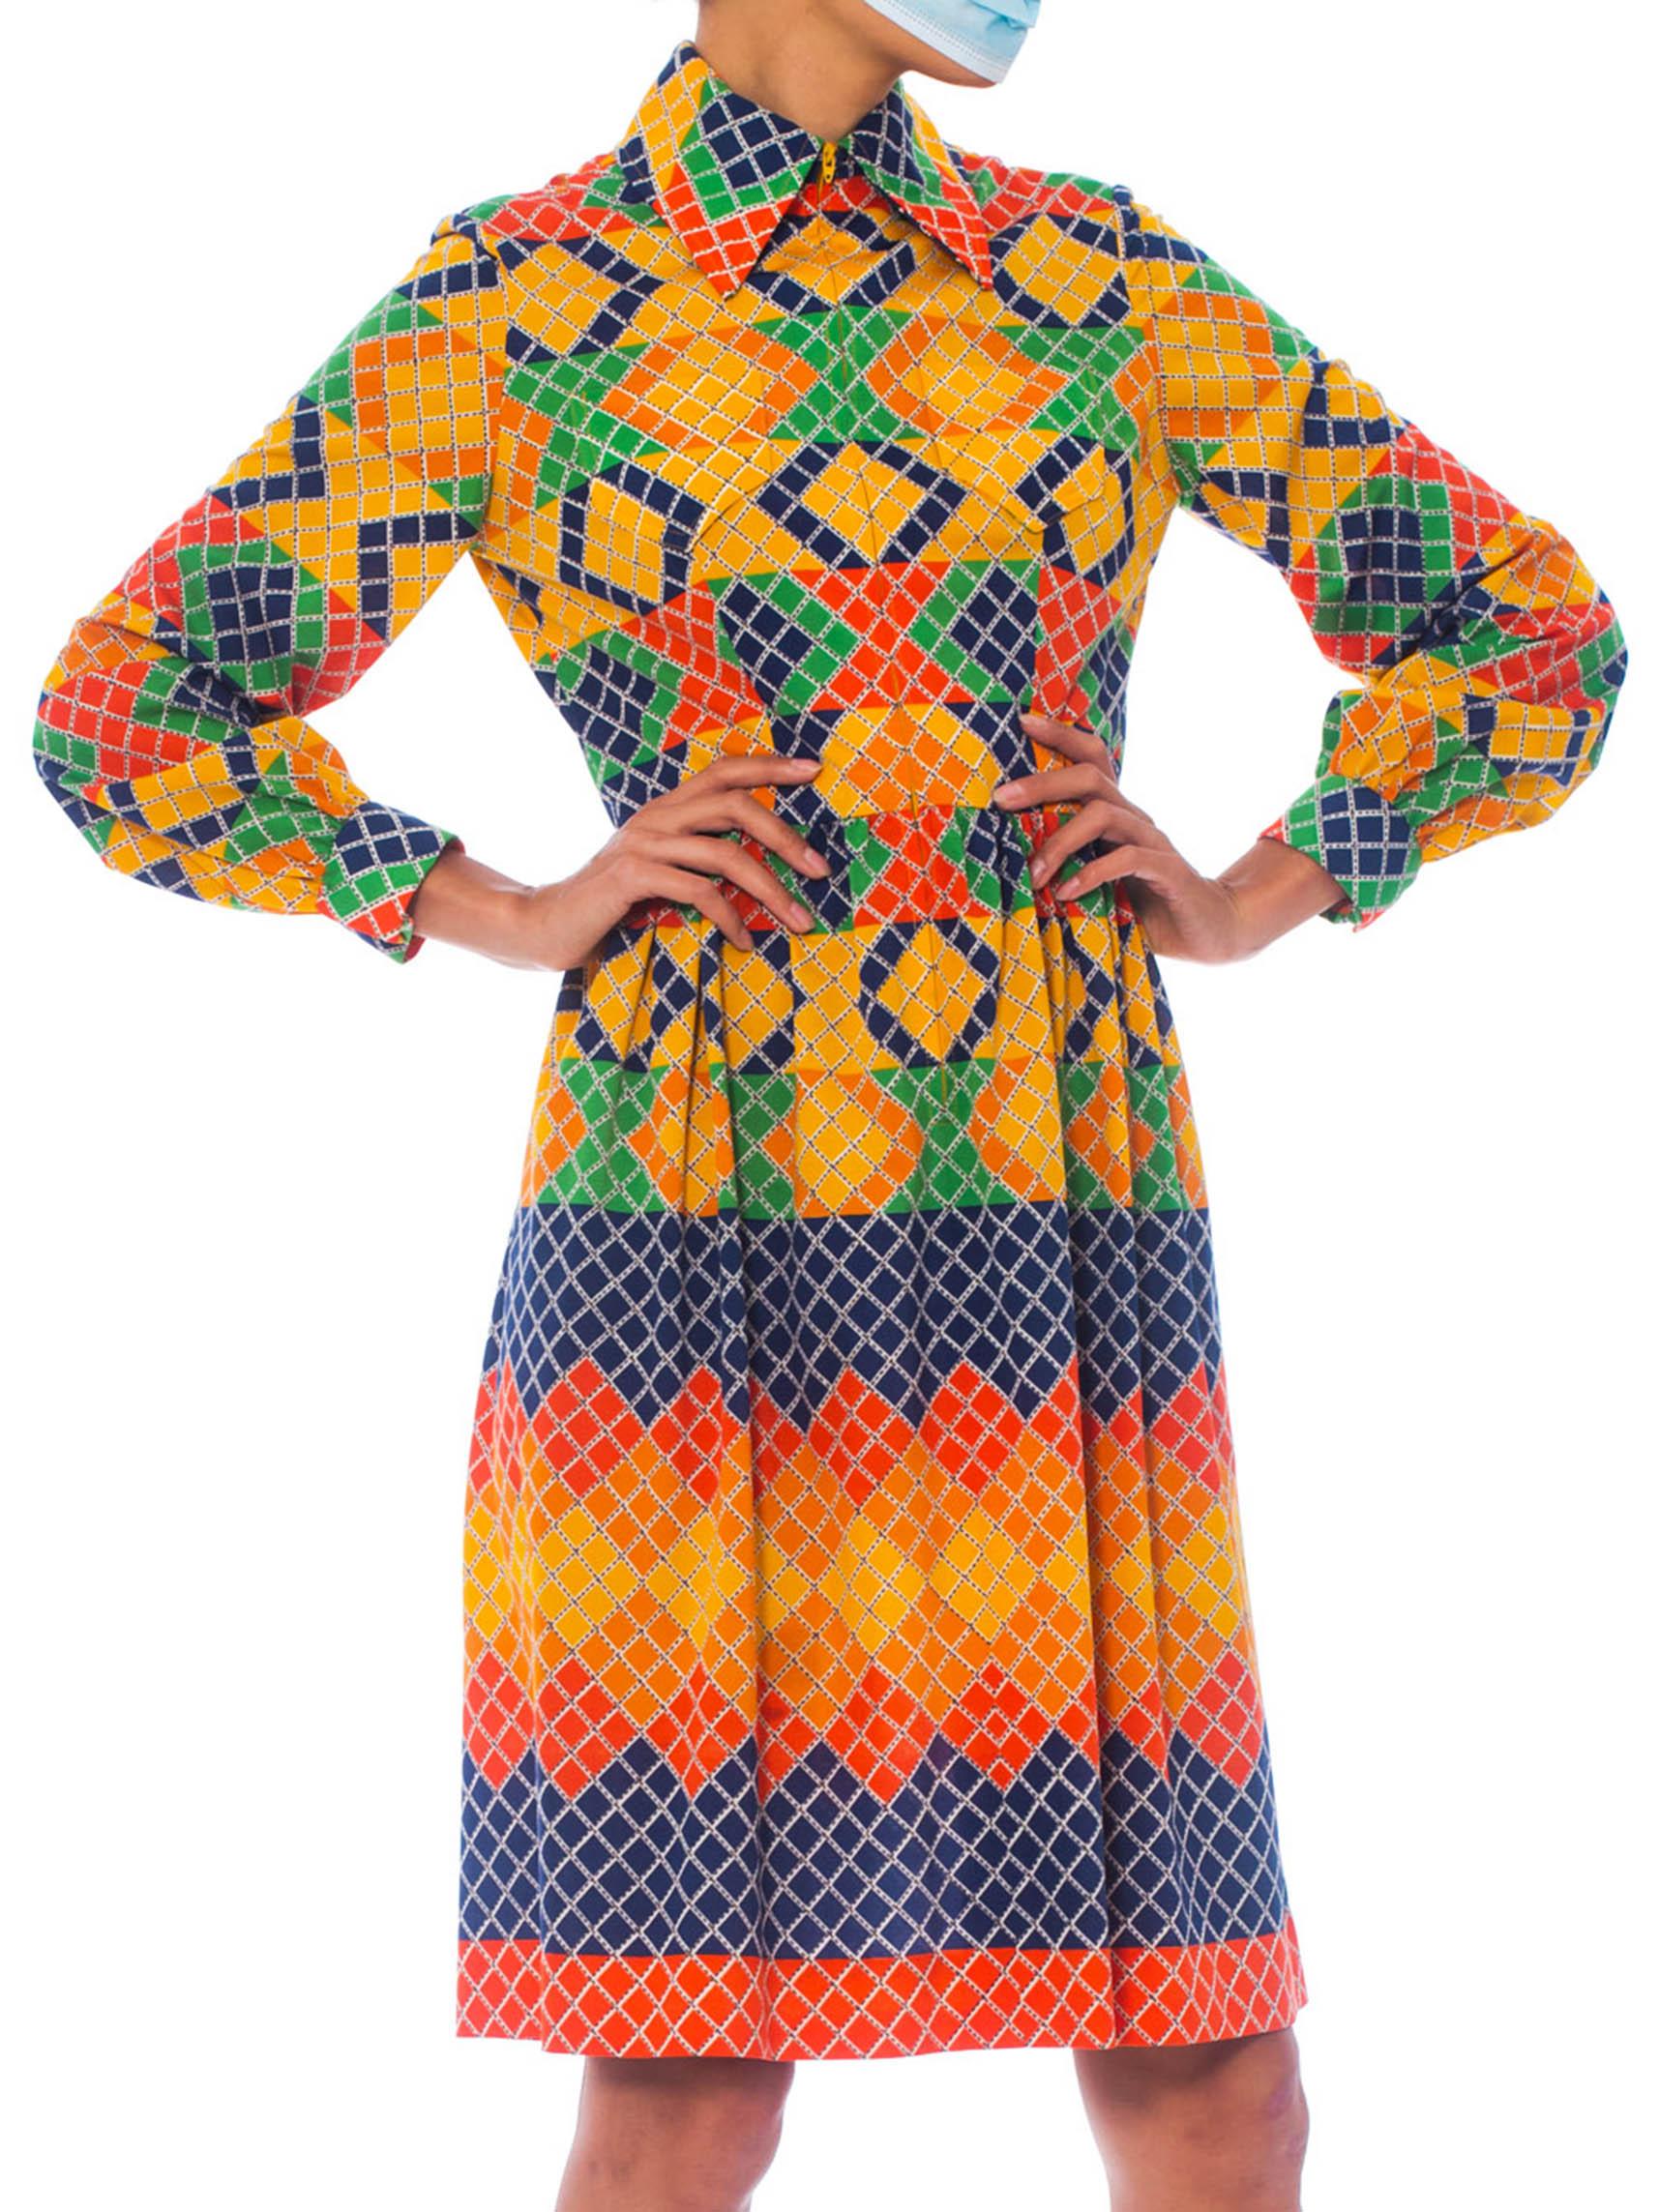 OSCAR DE LA RENTA Robe chemise en jersey de polyester multicolore à motifs géométriques, années 1960 2